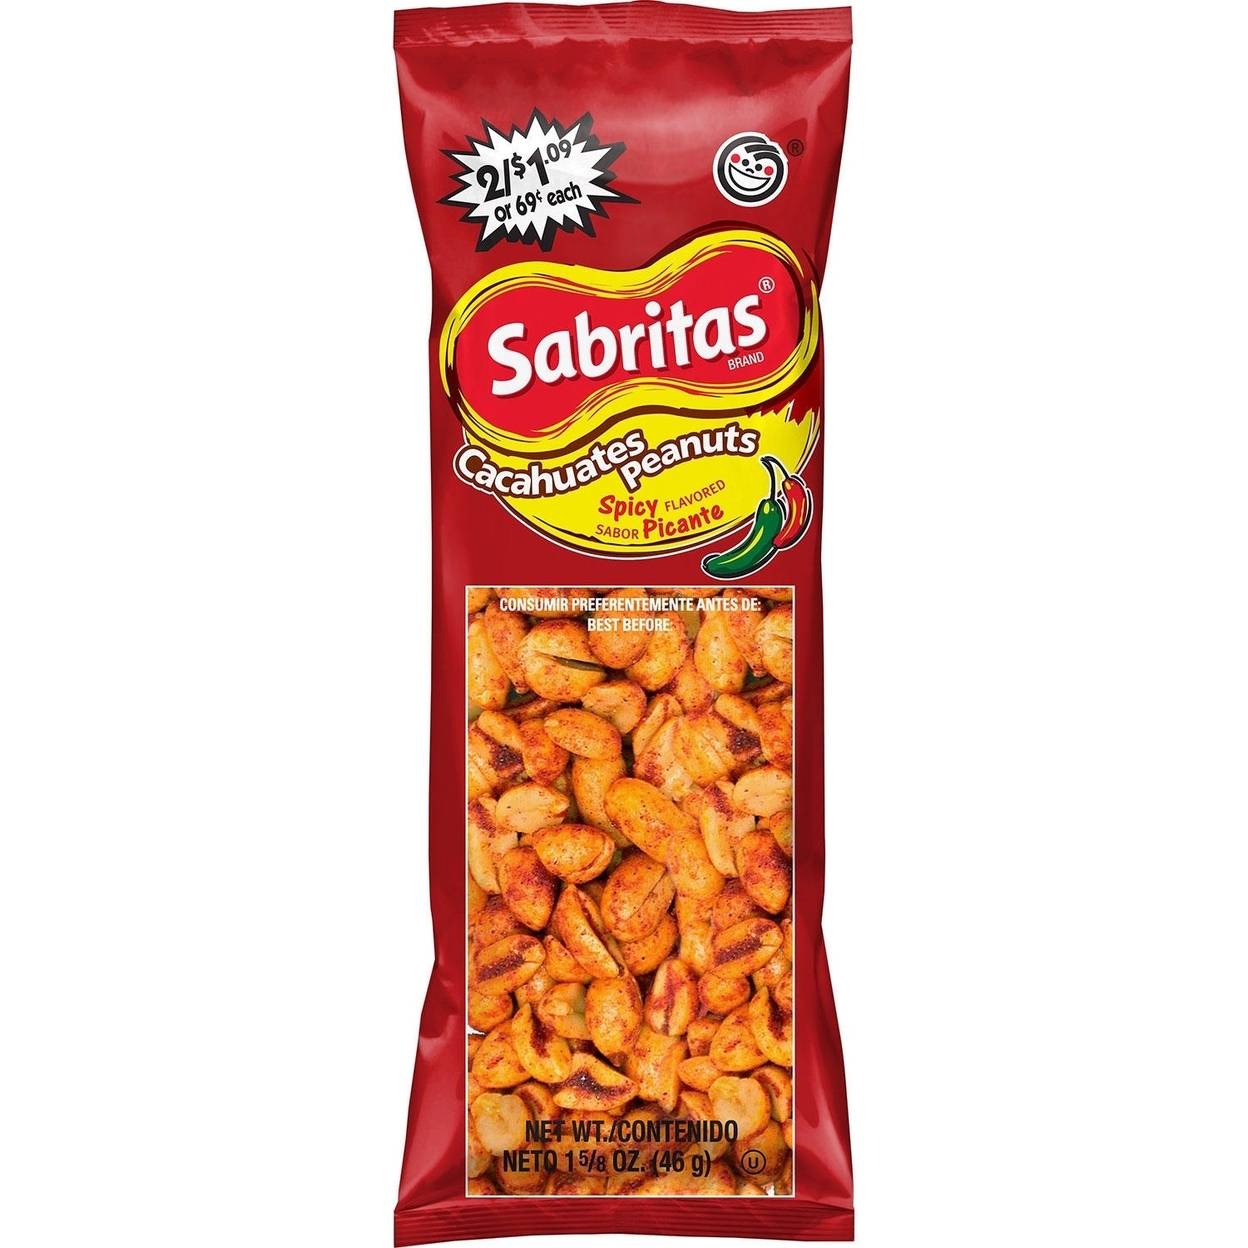 Frito Lay Sabritas Cacahuates Peanuts Mix - 30/1.625oz